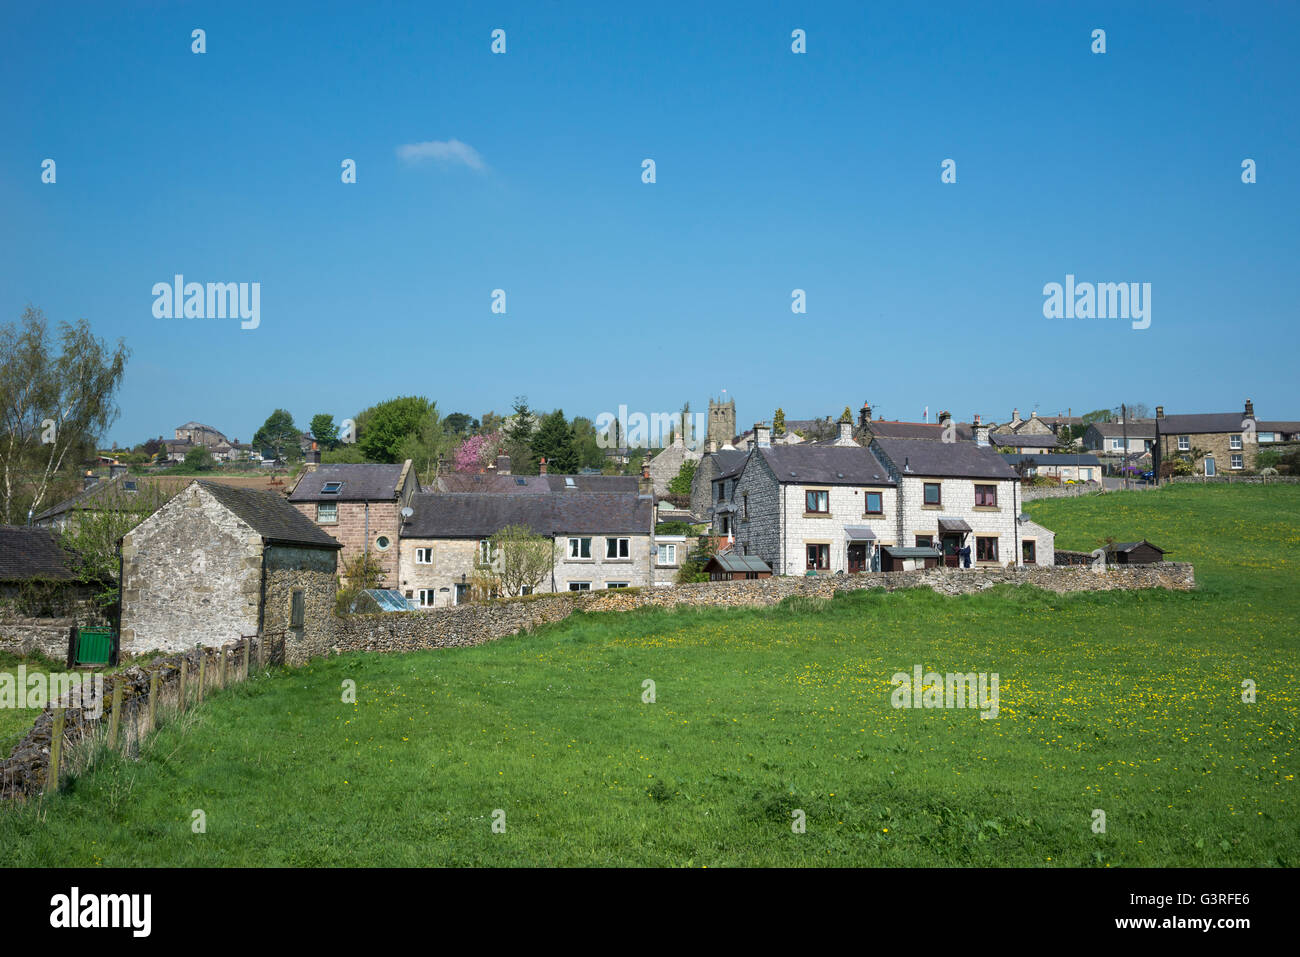 Le village de Cologny dans le Peak District, Derbyshire. Les maisons construites en pierre calcaire dans ce joli village. Banque D'Images